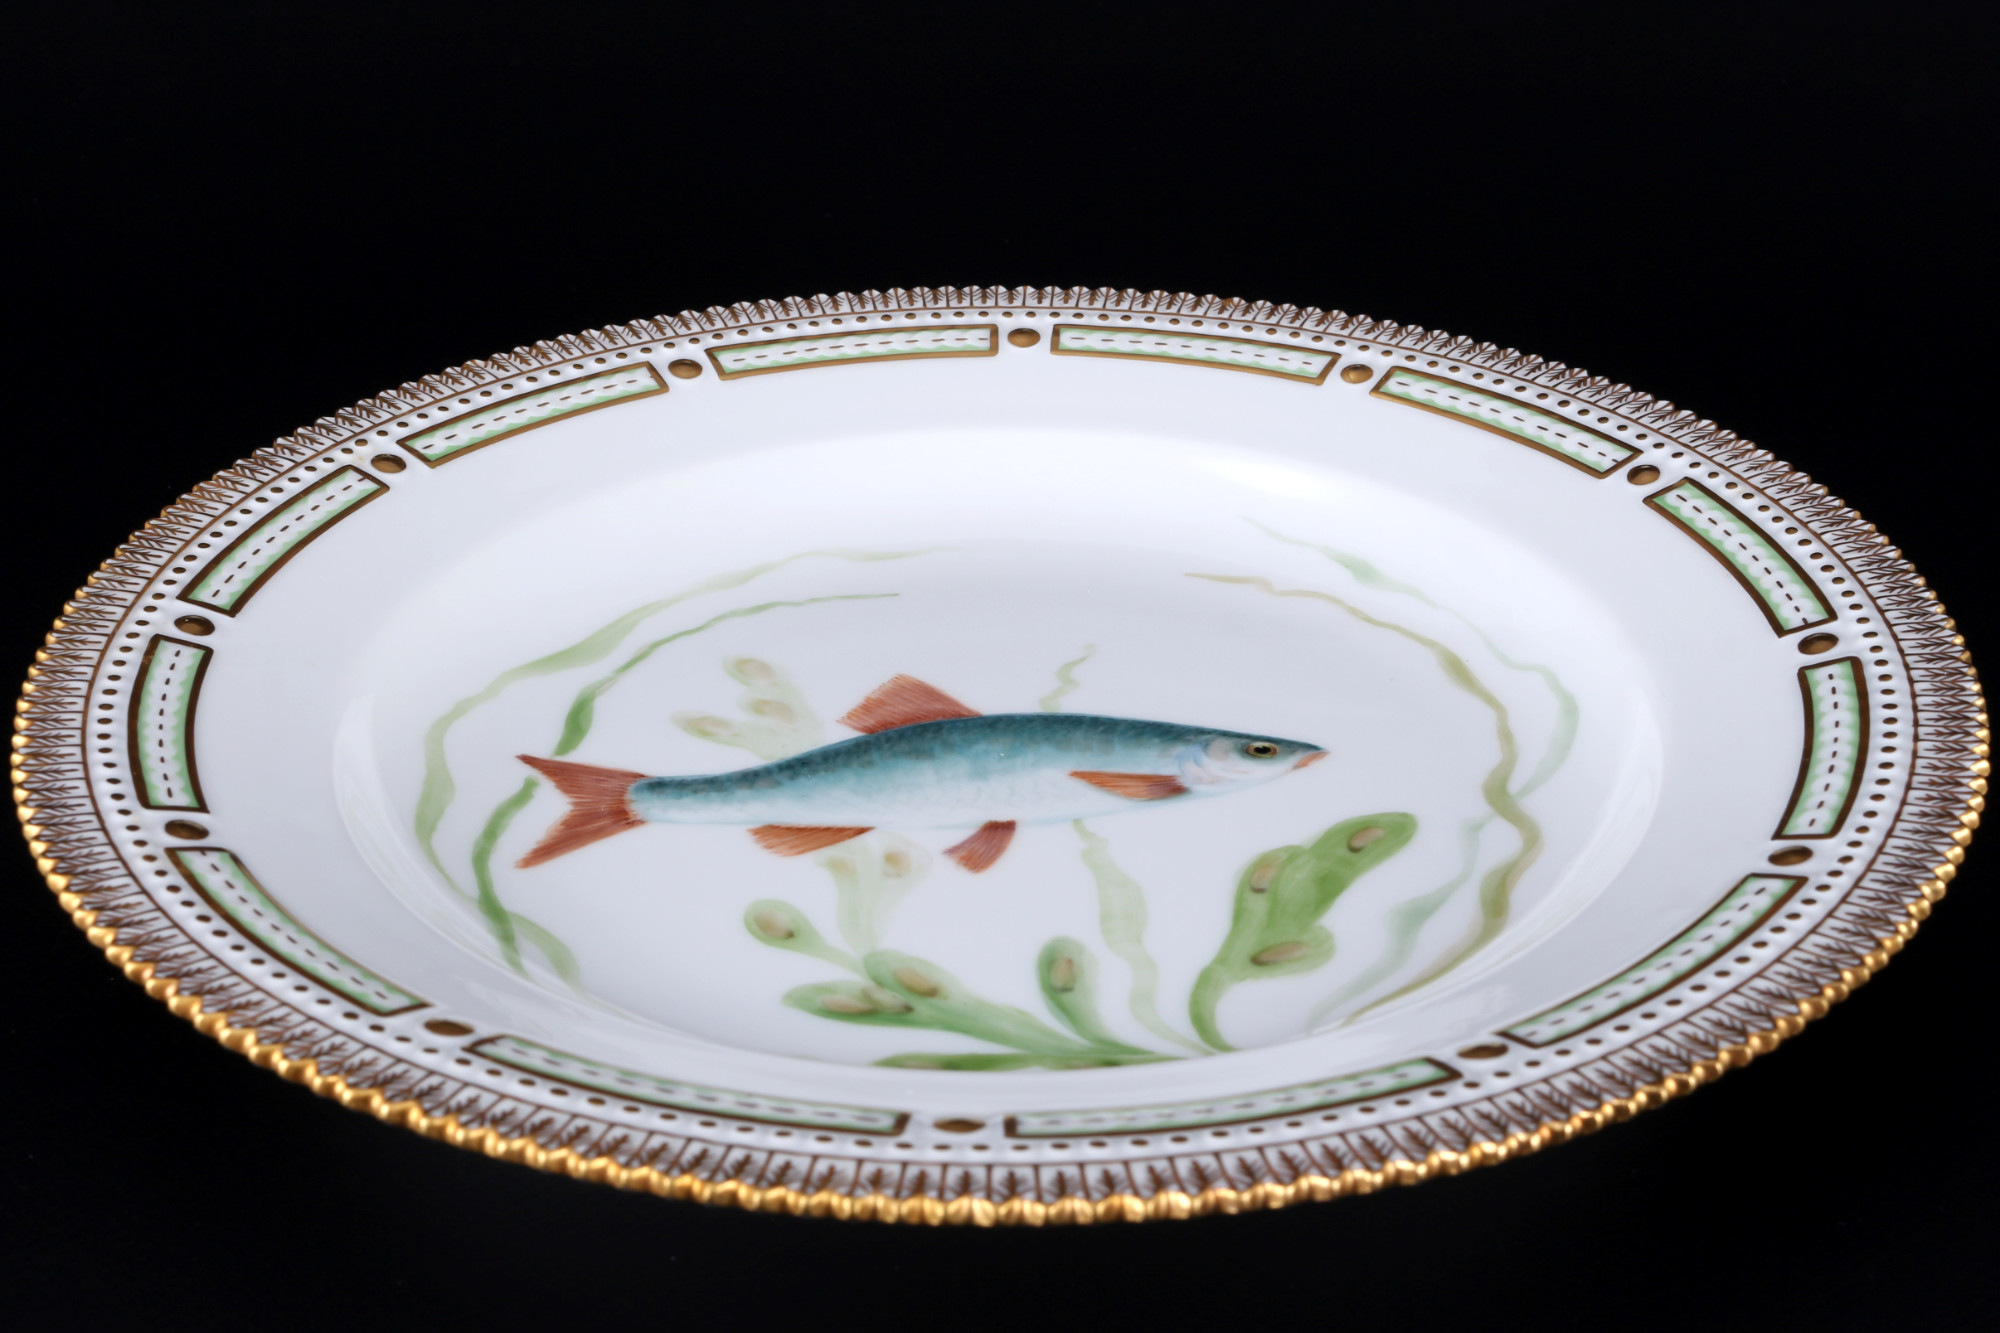 Royal Copenhagen Flora Danica Fish dinner plate 3549 1st choice, Speiseteller, - Image 2 of 3